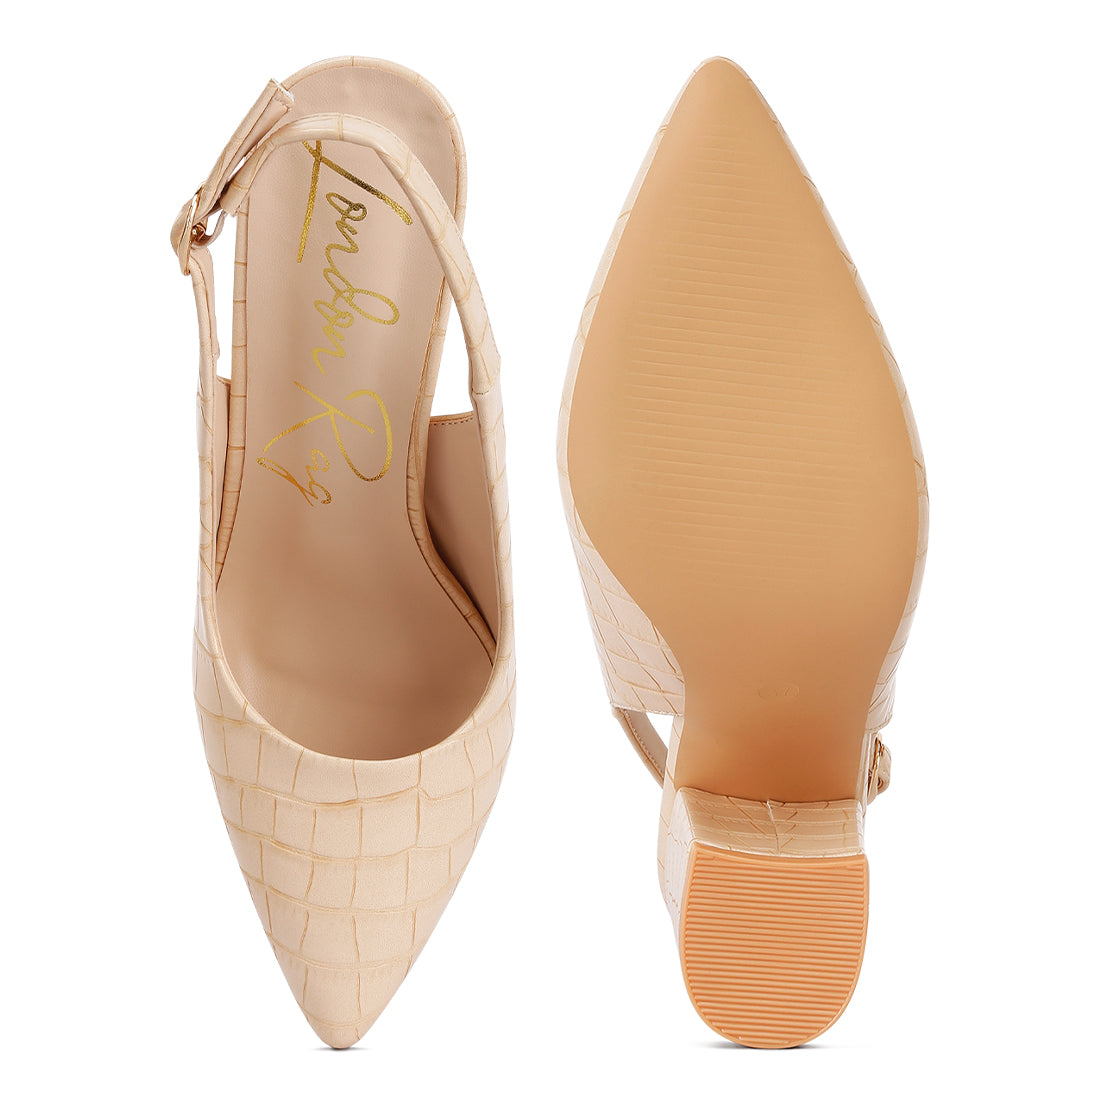 macha croc texture sling back heels#color_beige